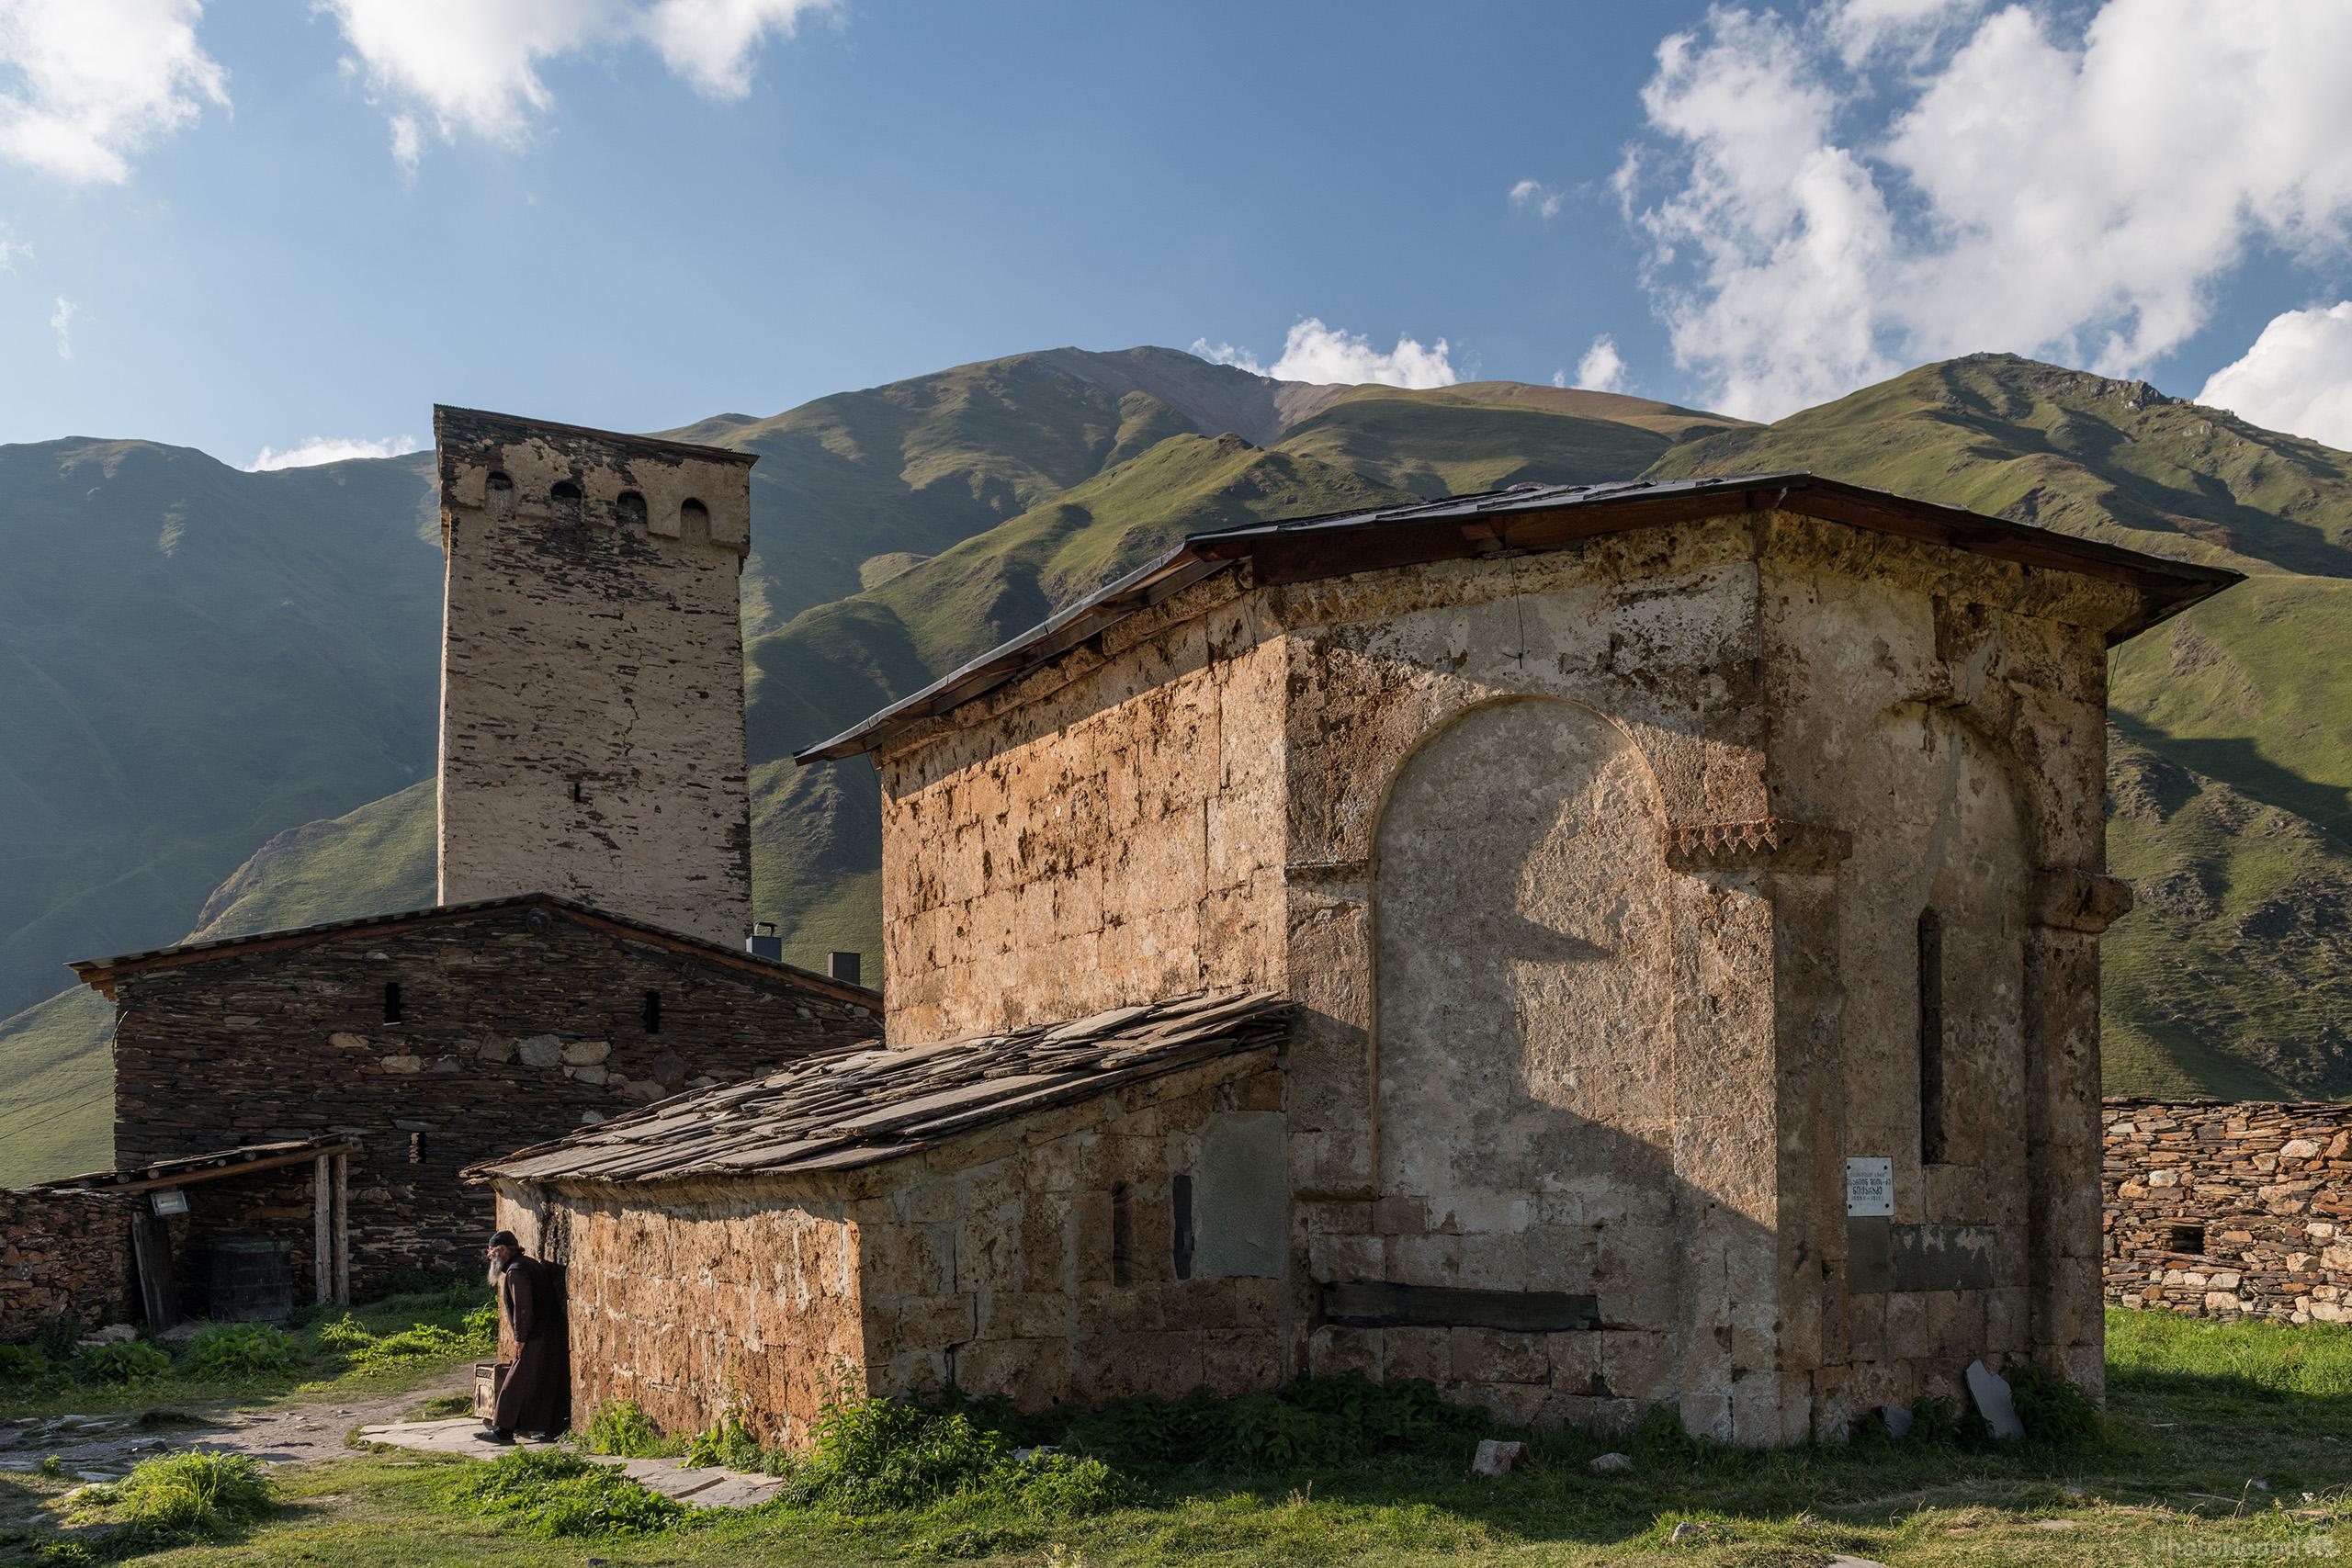 Image of Lamaria Monastery by Luka Esenko